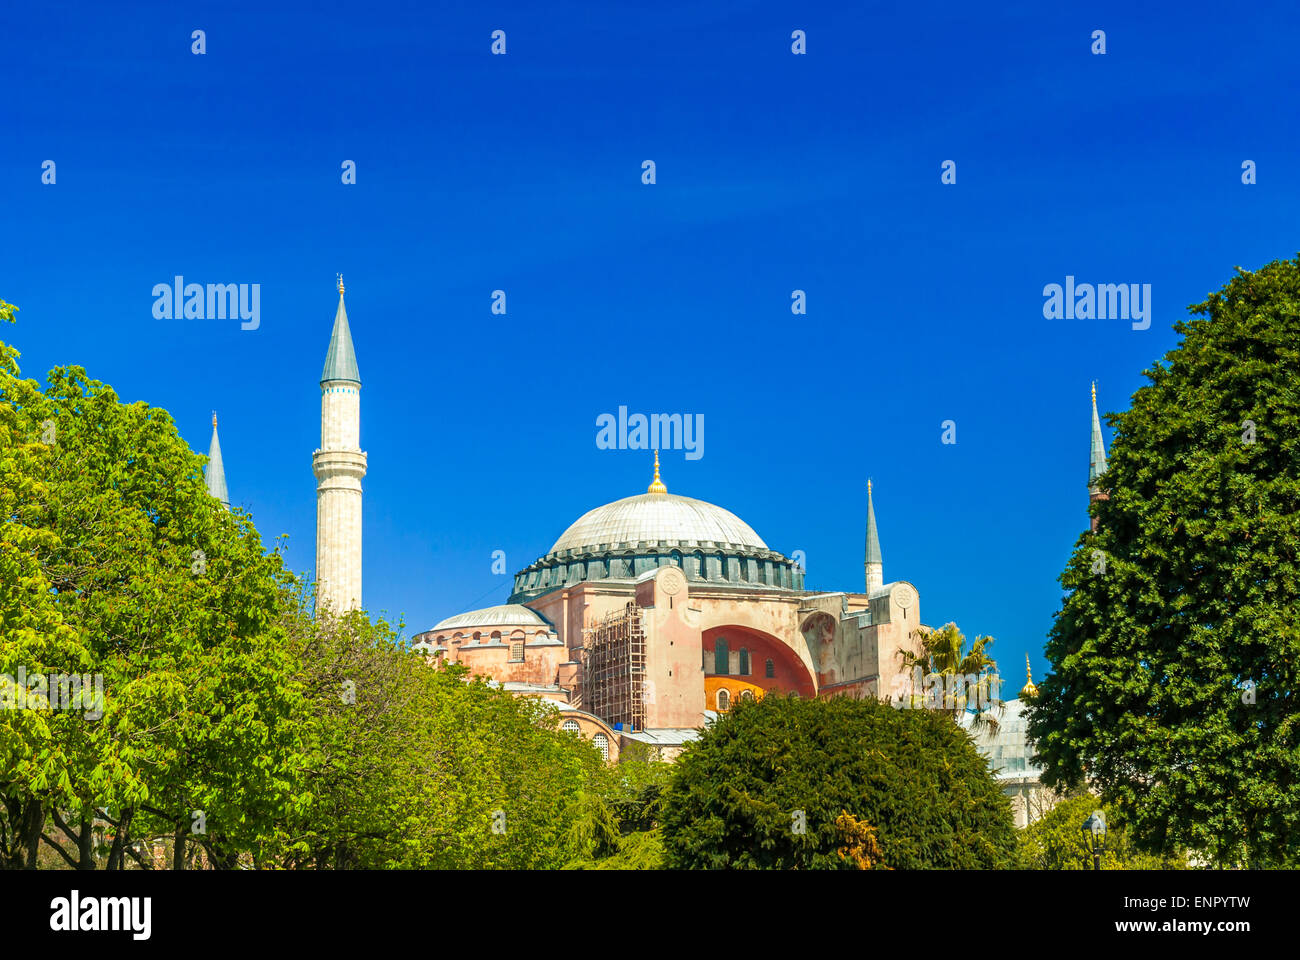 La mosquée Sainte-Sophie dans la place Sultanahmet, Istanbul, Turquie. Le musée Hagia Sophia Istanbul Turquie Banque D'Images